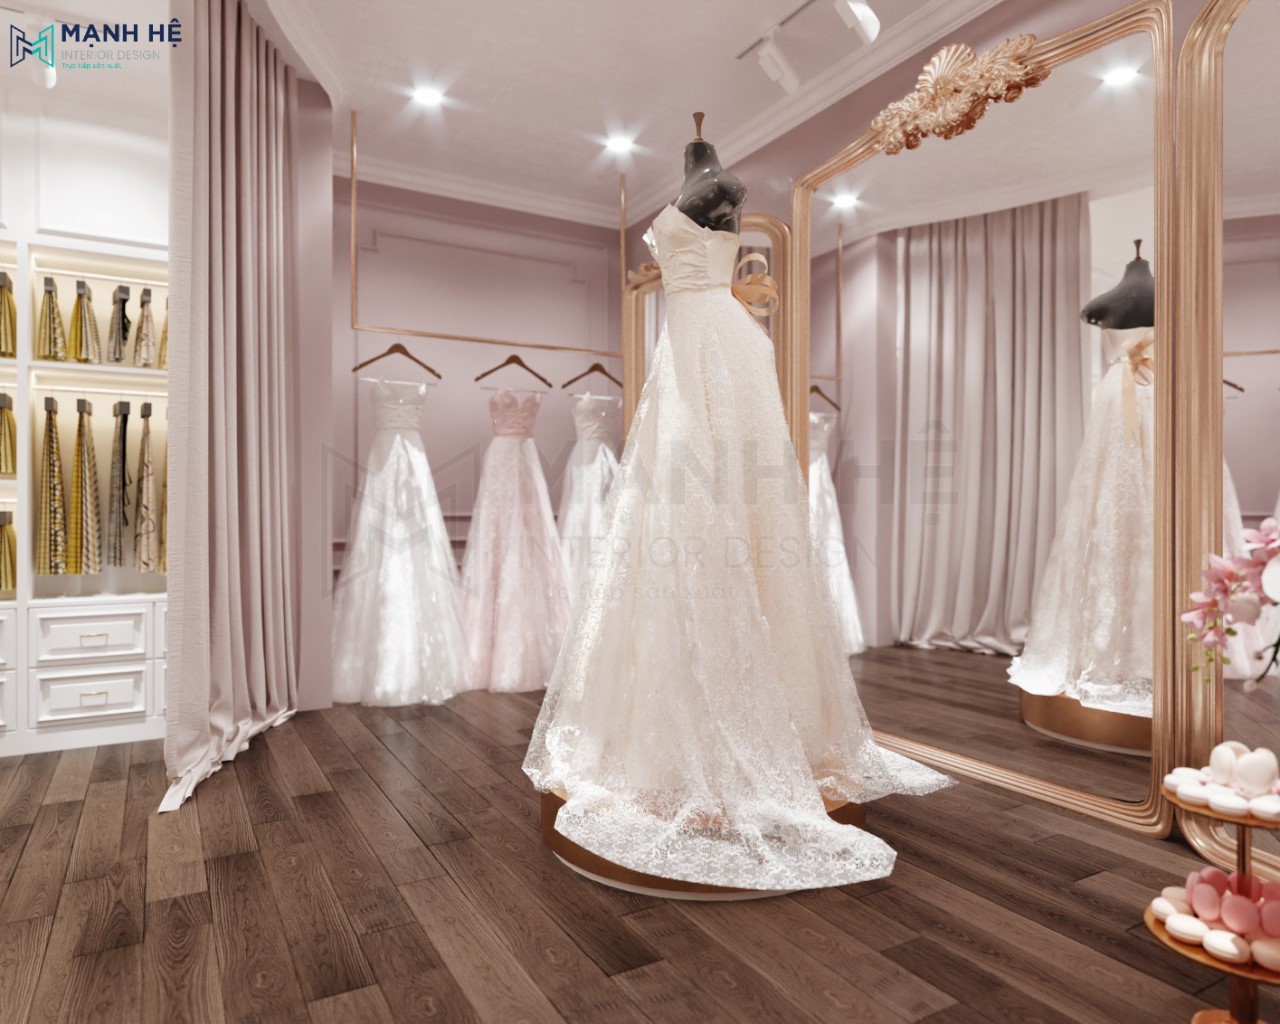  Bục thử váy cưới cho Studio bucthuvay studio  Giảm từ 3 10 trên  tổng hoá đơn cho khách đặt hàng trọn bộ  Áp dụng theo gói sản phẩm  